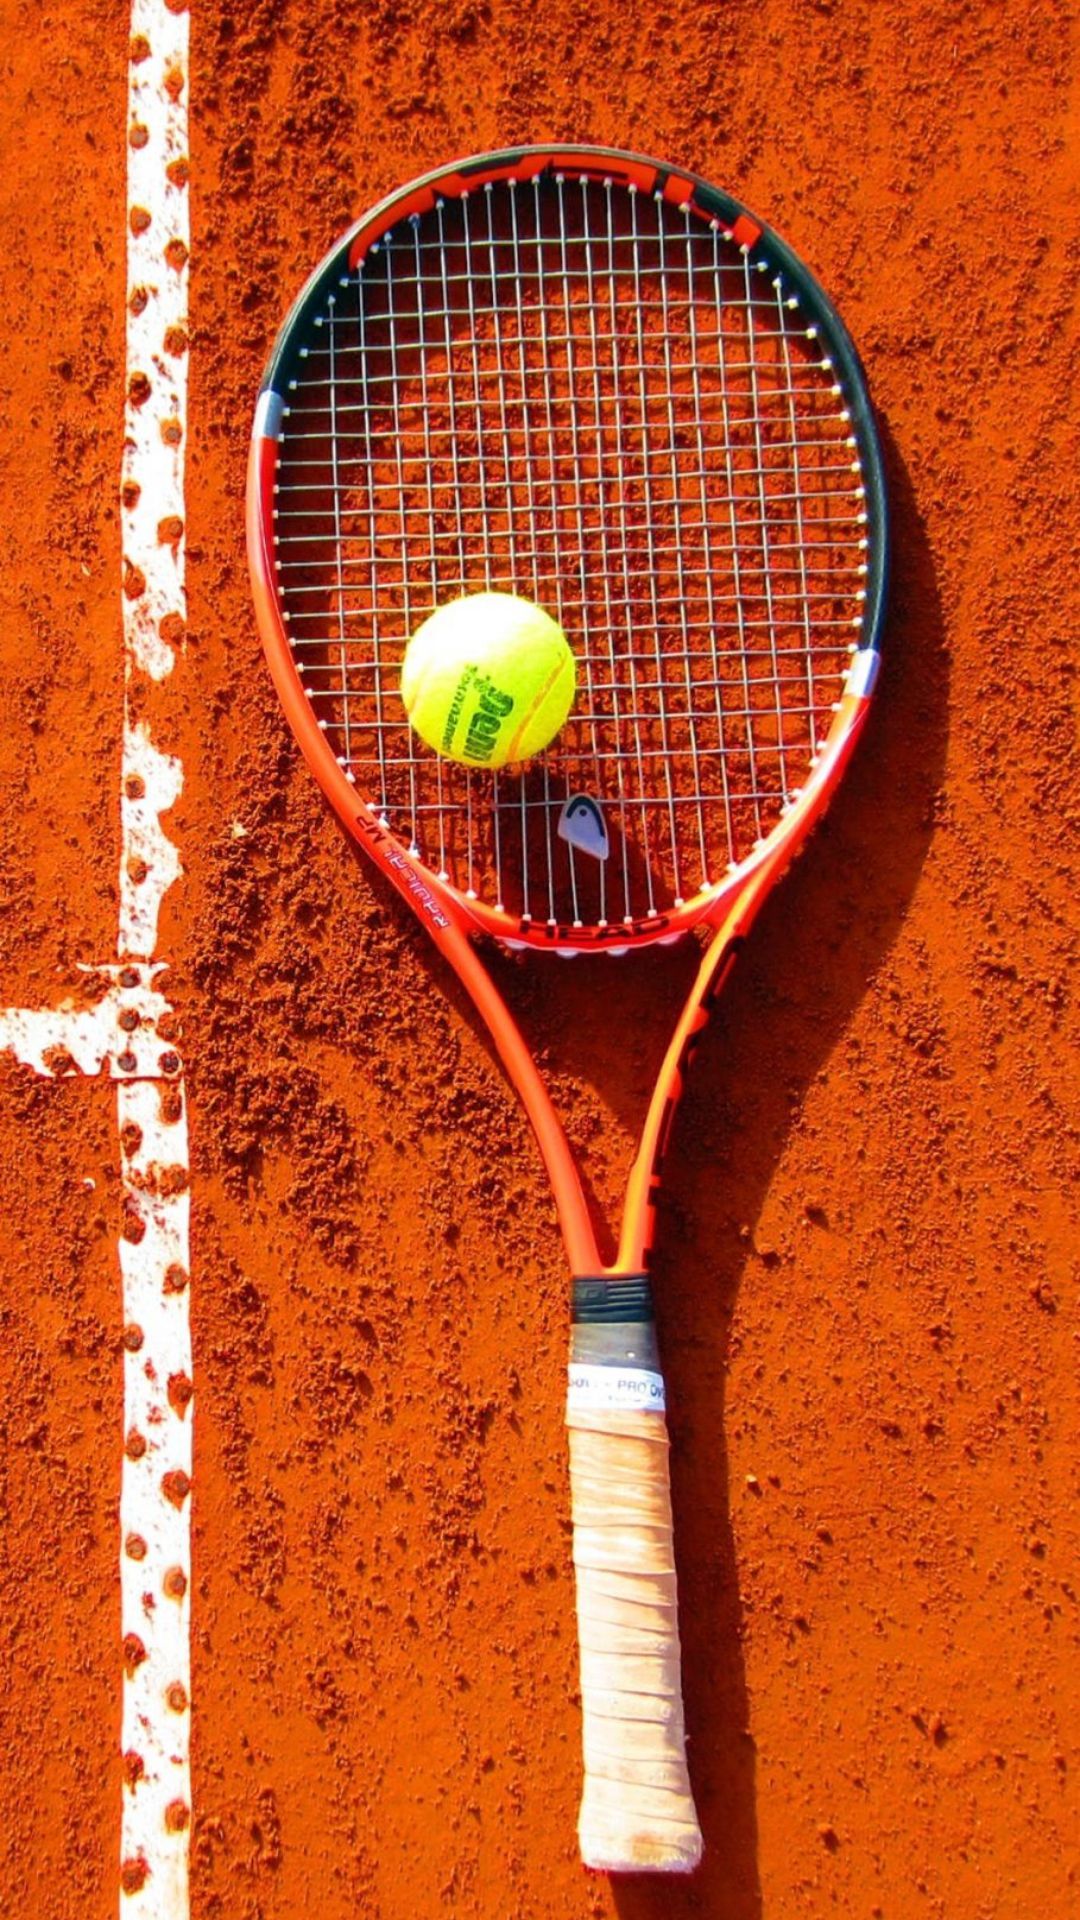  Tennis Hintergrundbild 1080x1920. Tennis Wallpaper Tennis Background Download